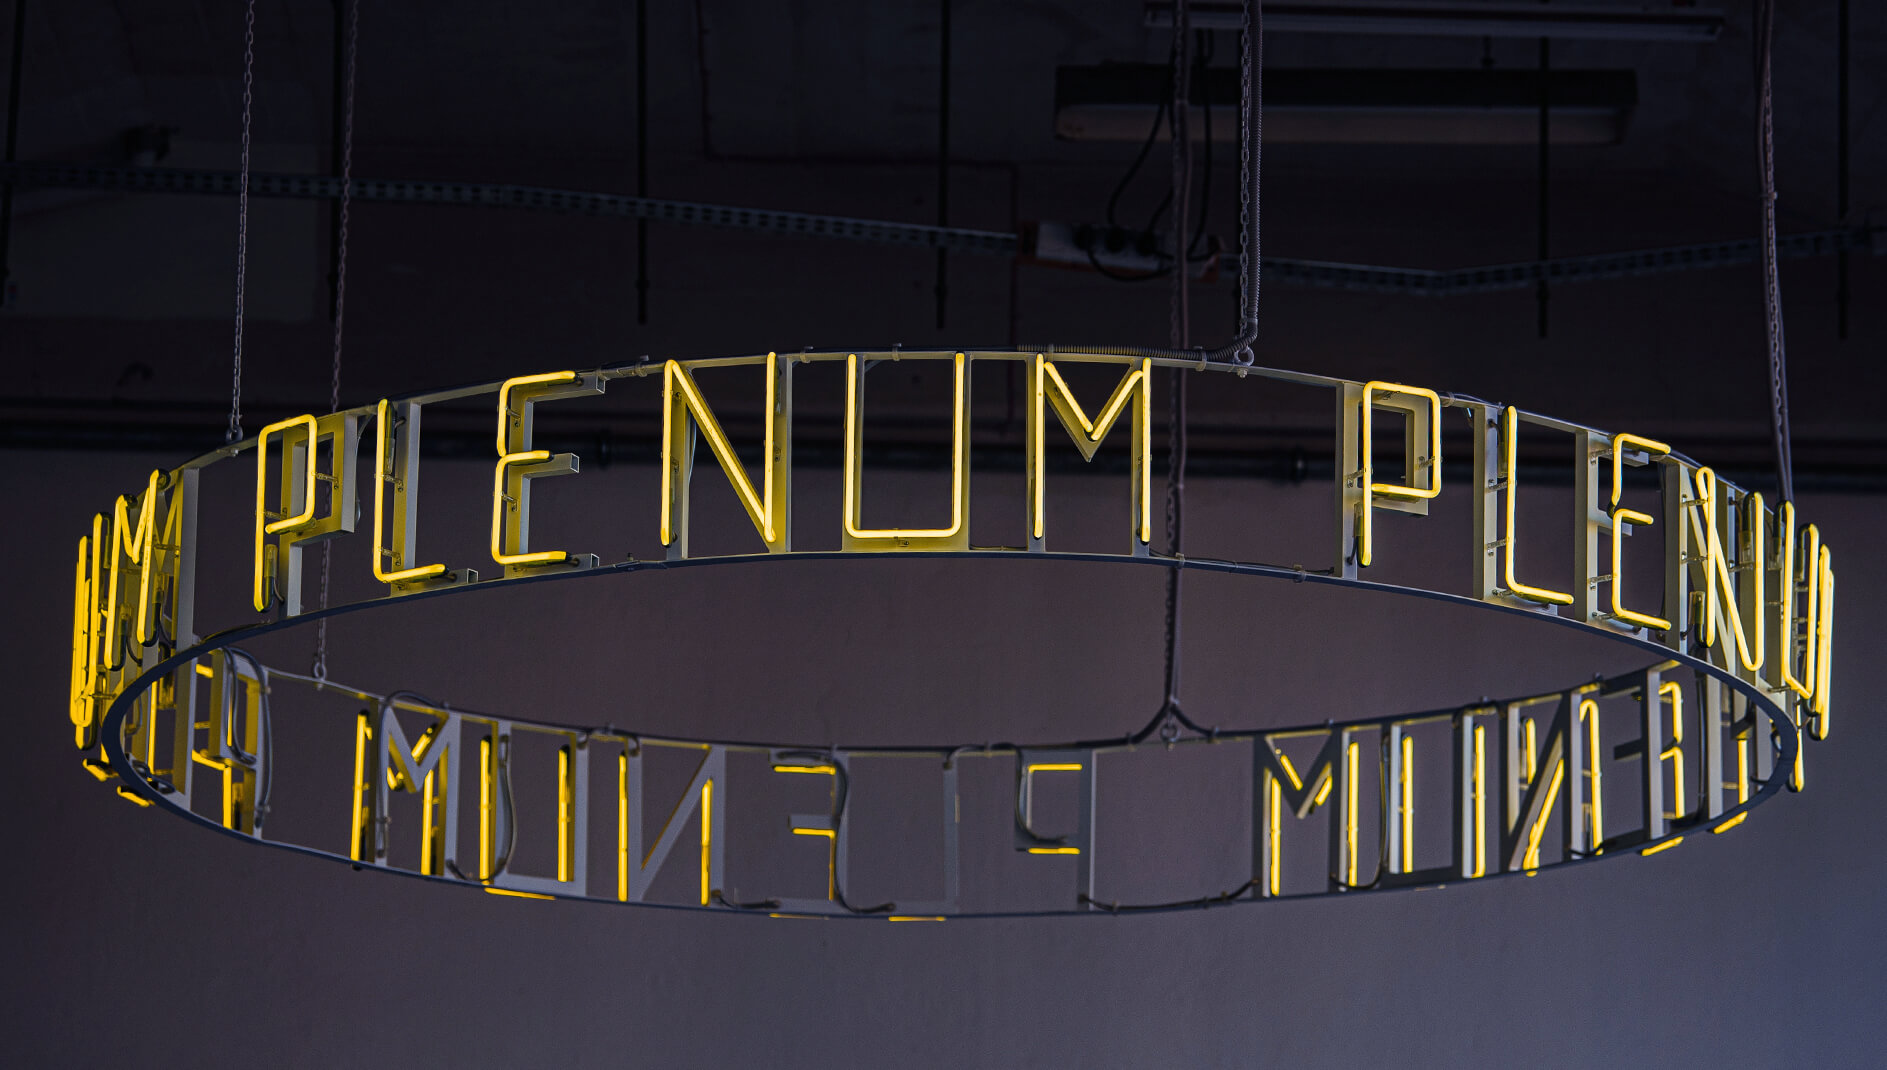 Neon Plenum - Plenu kreisförmige Leuchtreklame an der Decke, in gelb.